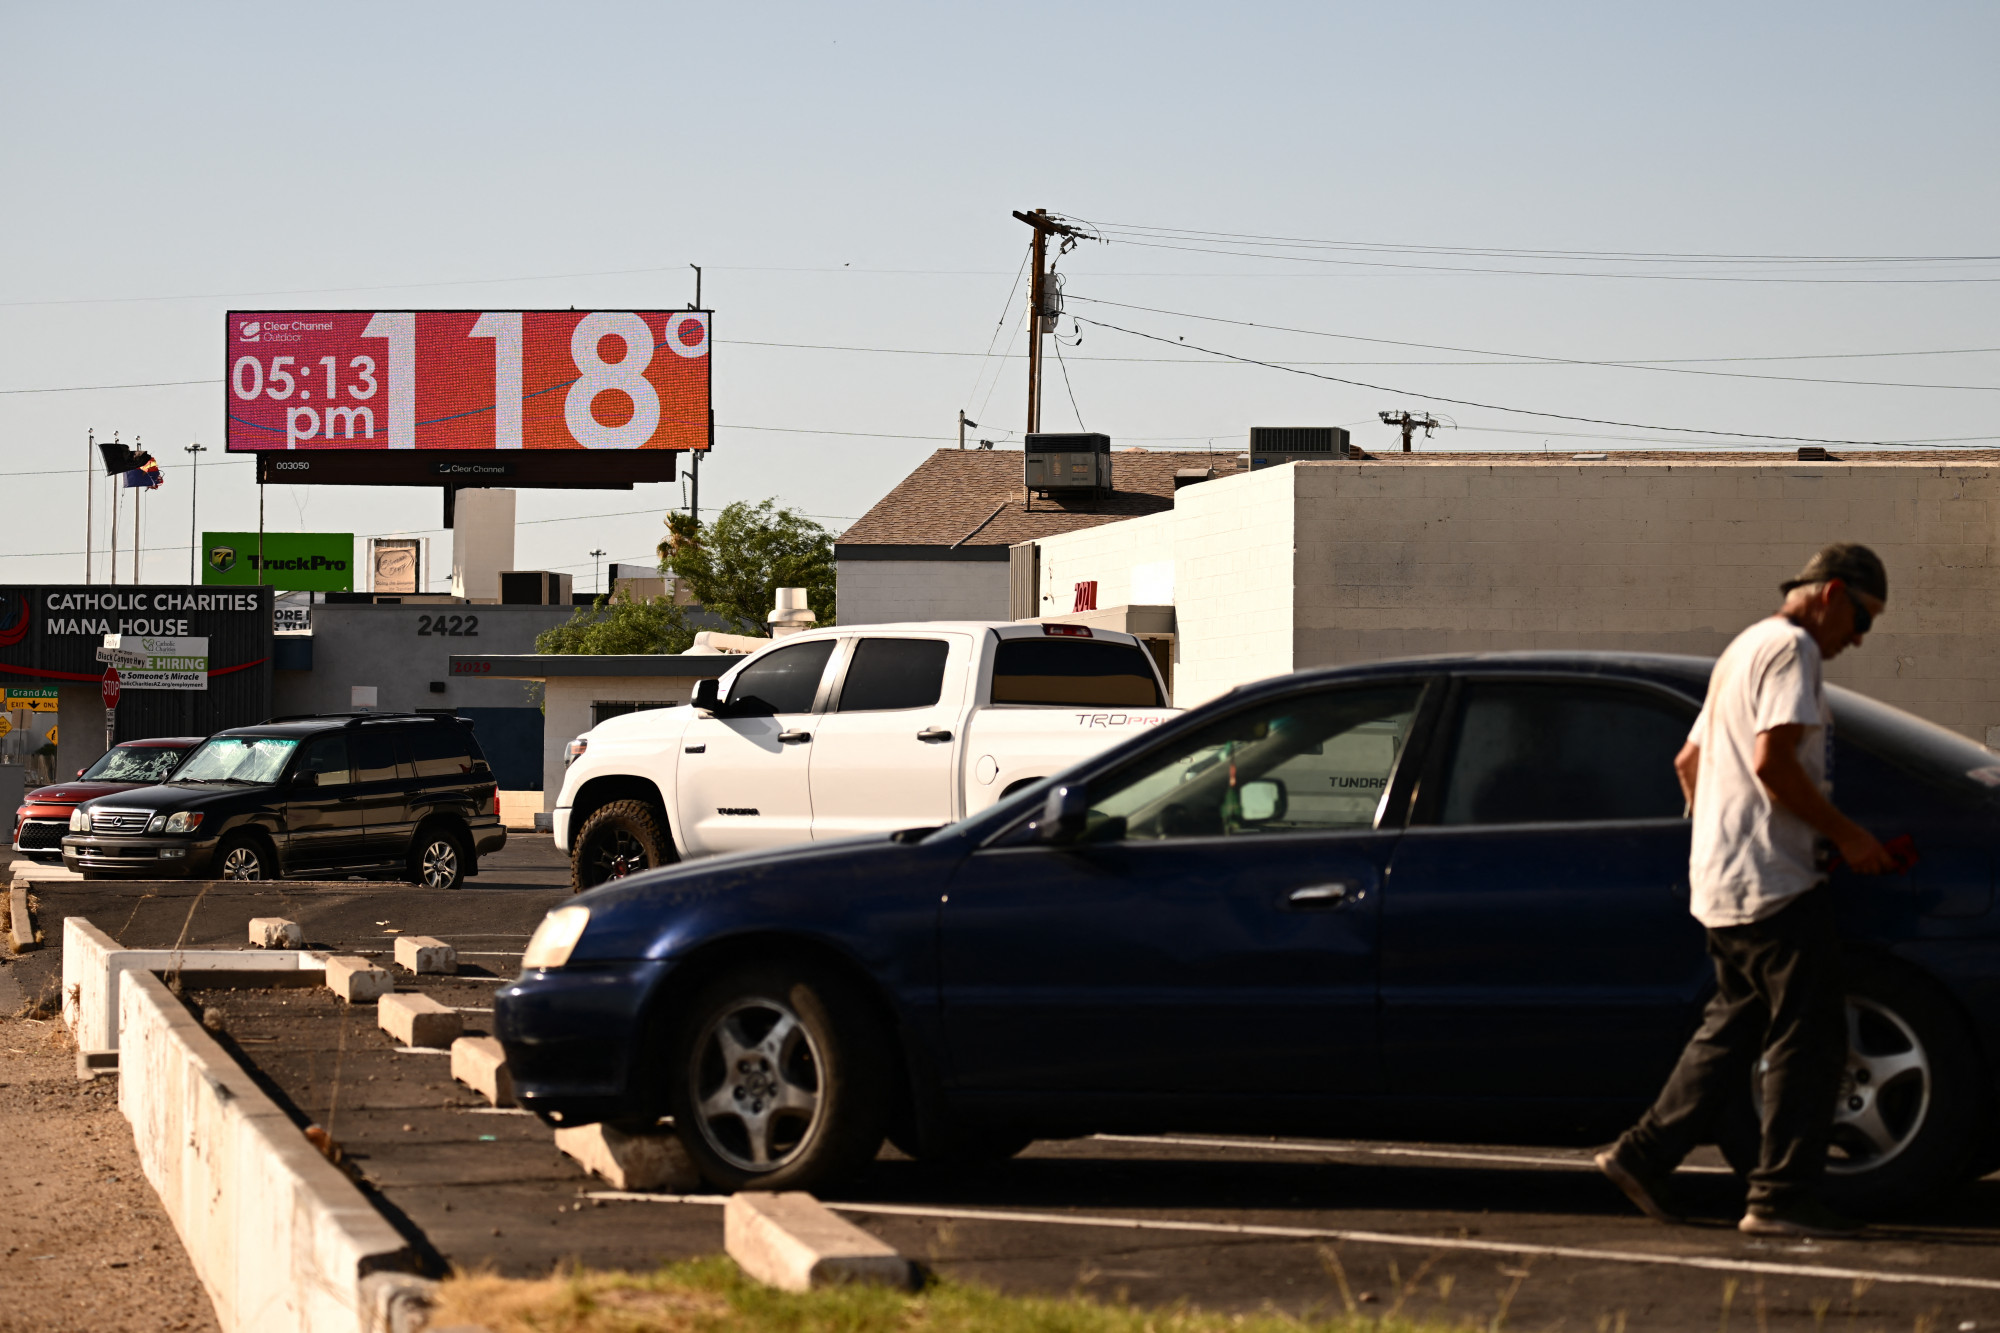 Az arizonai Phoenixben július 18-án 48 Celsius-fokot mértek.